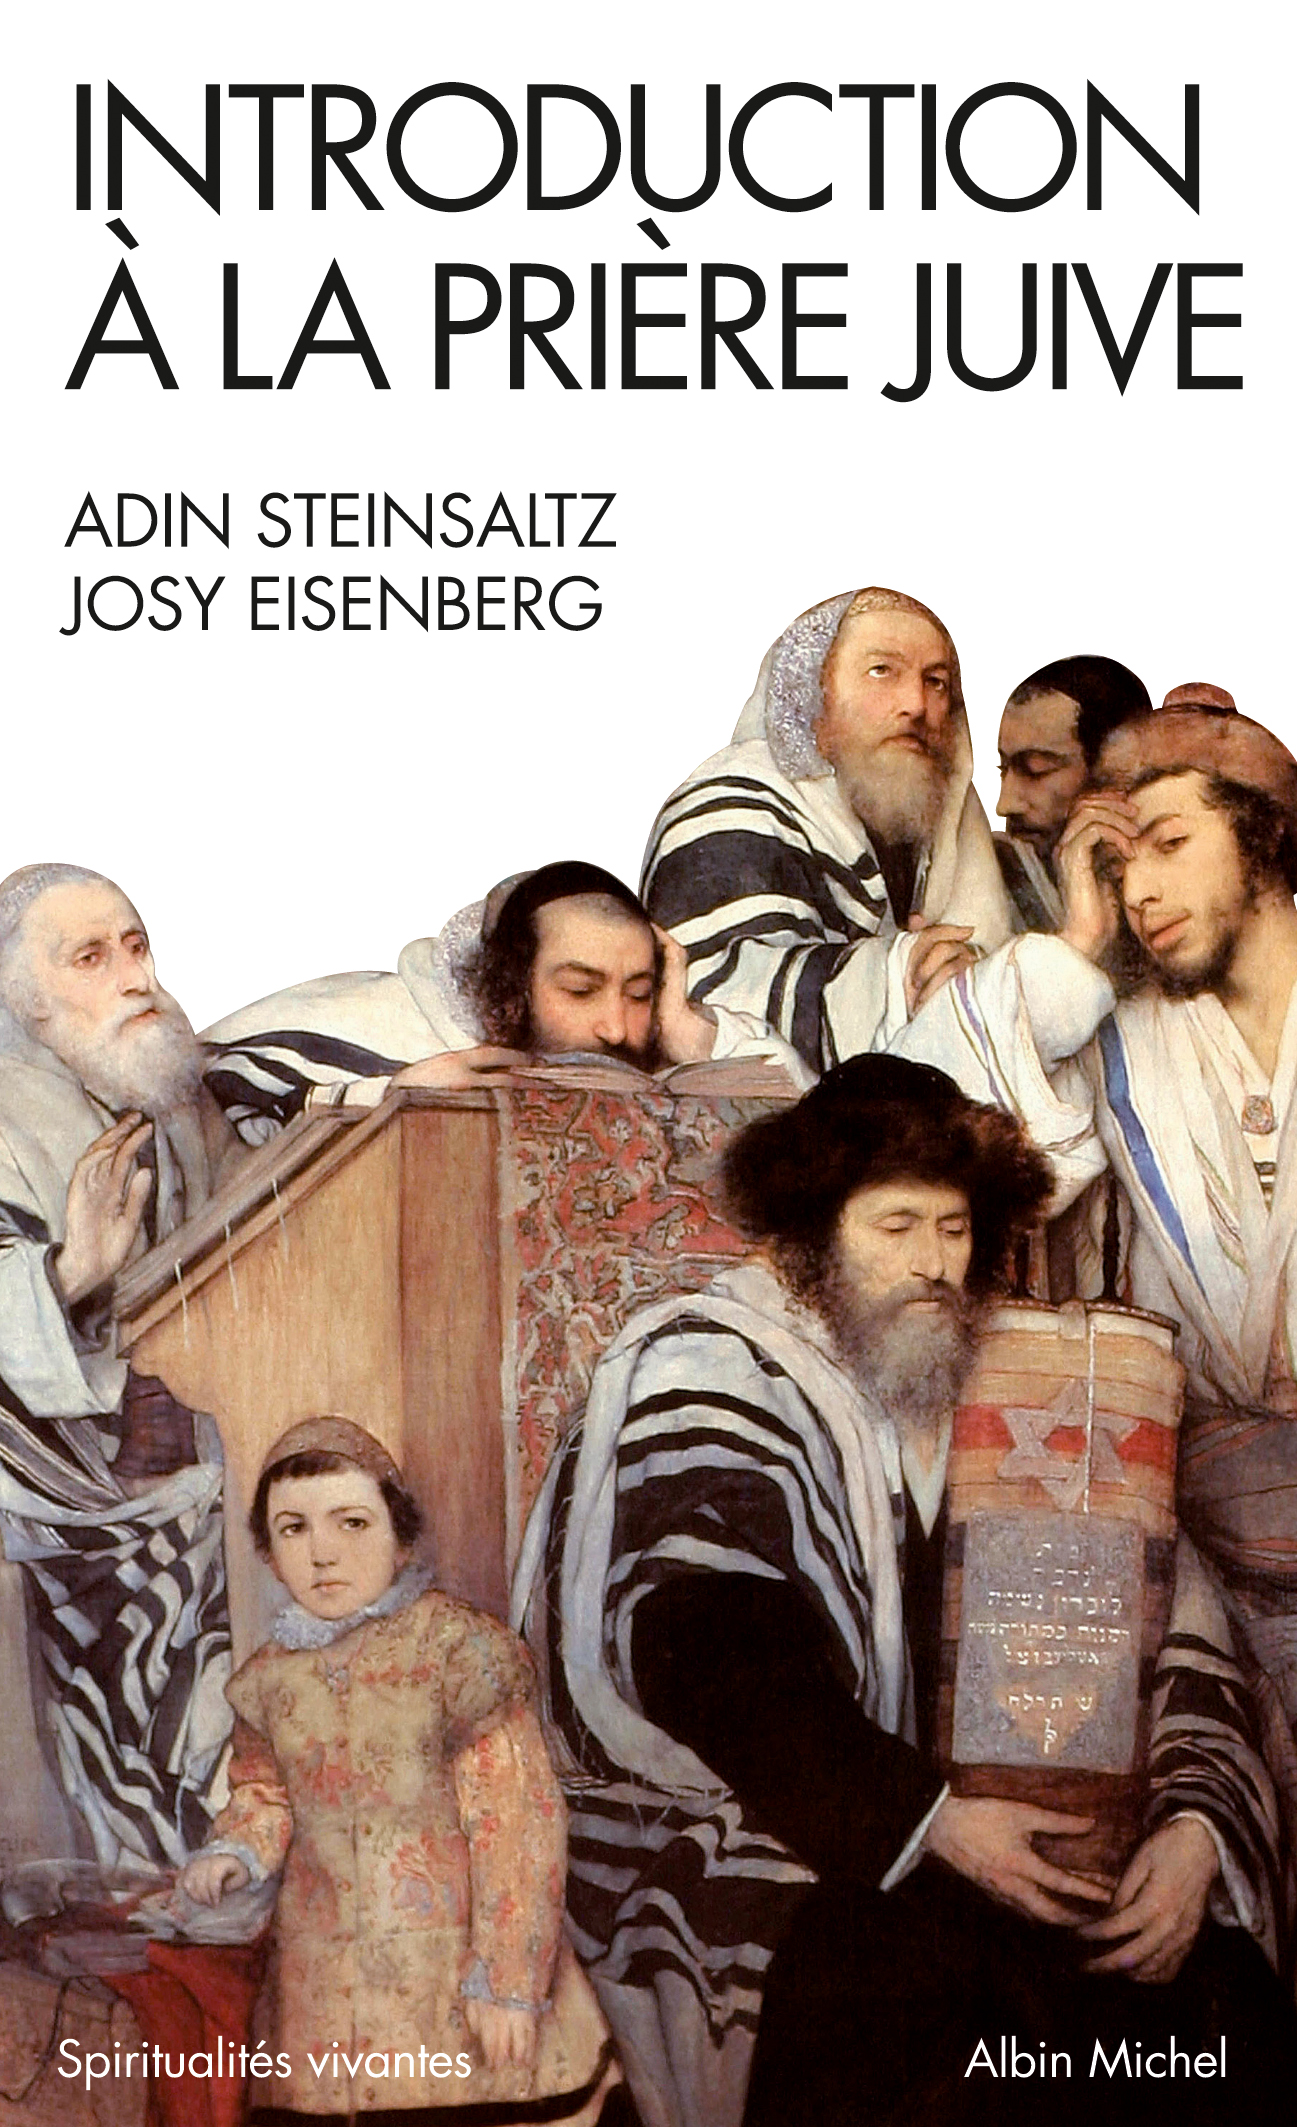 Couverture du livre Introduction à la prière juive